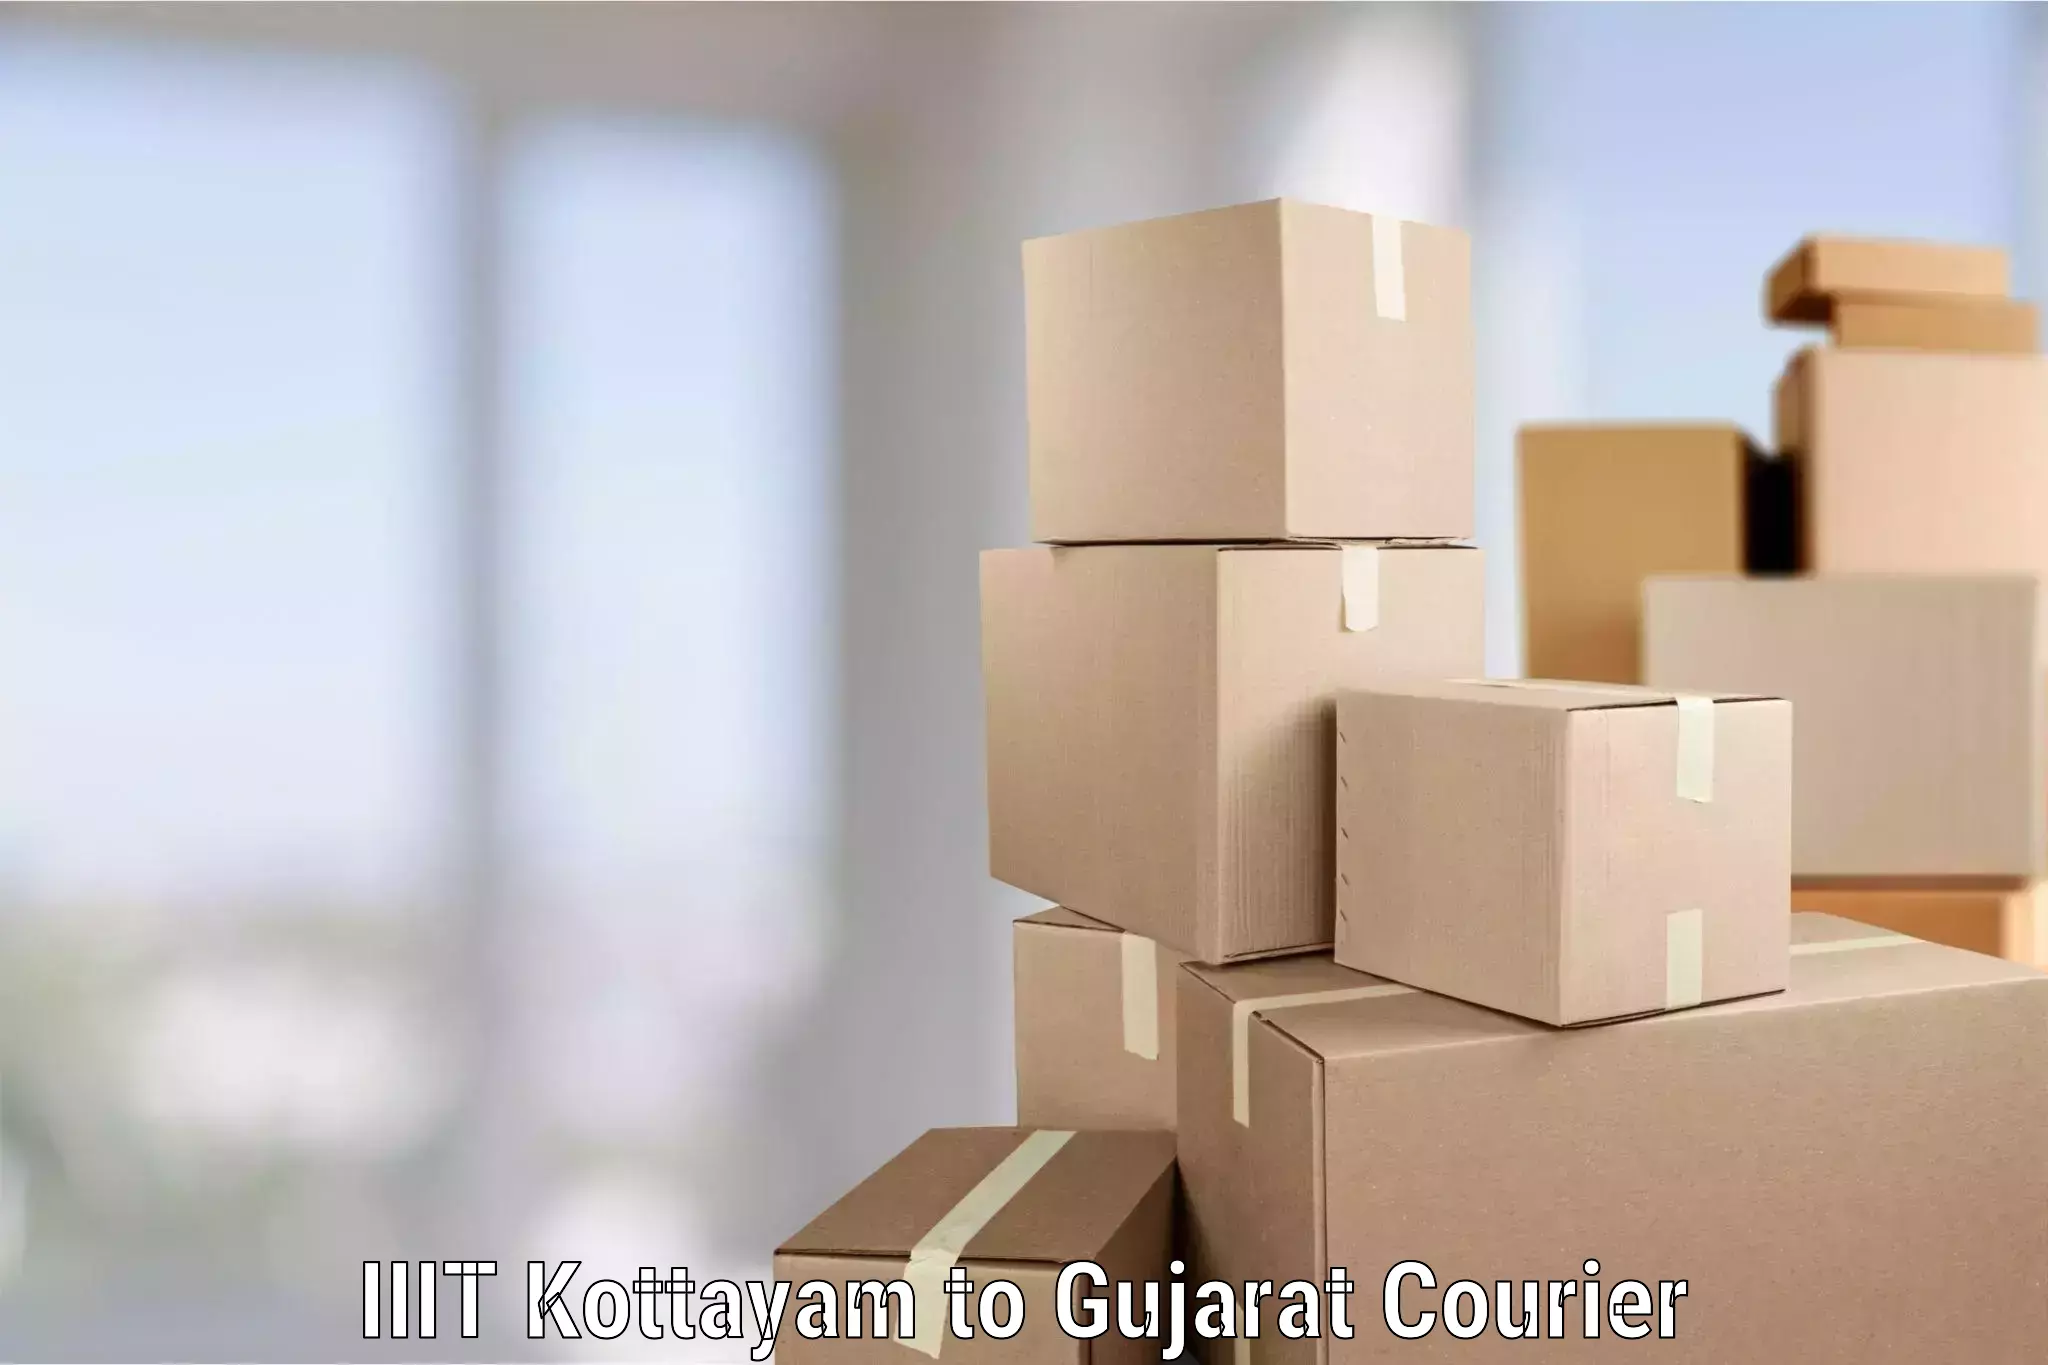 Safe household movers IIIT Kottayam to Gujarat